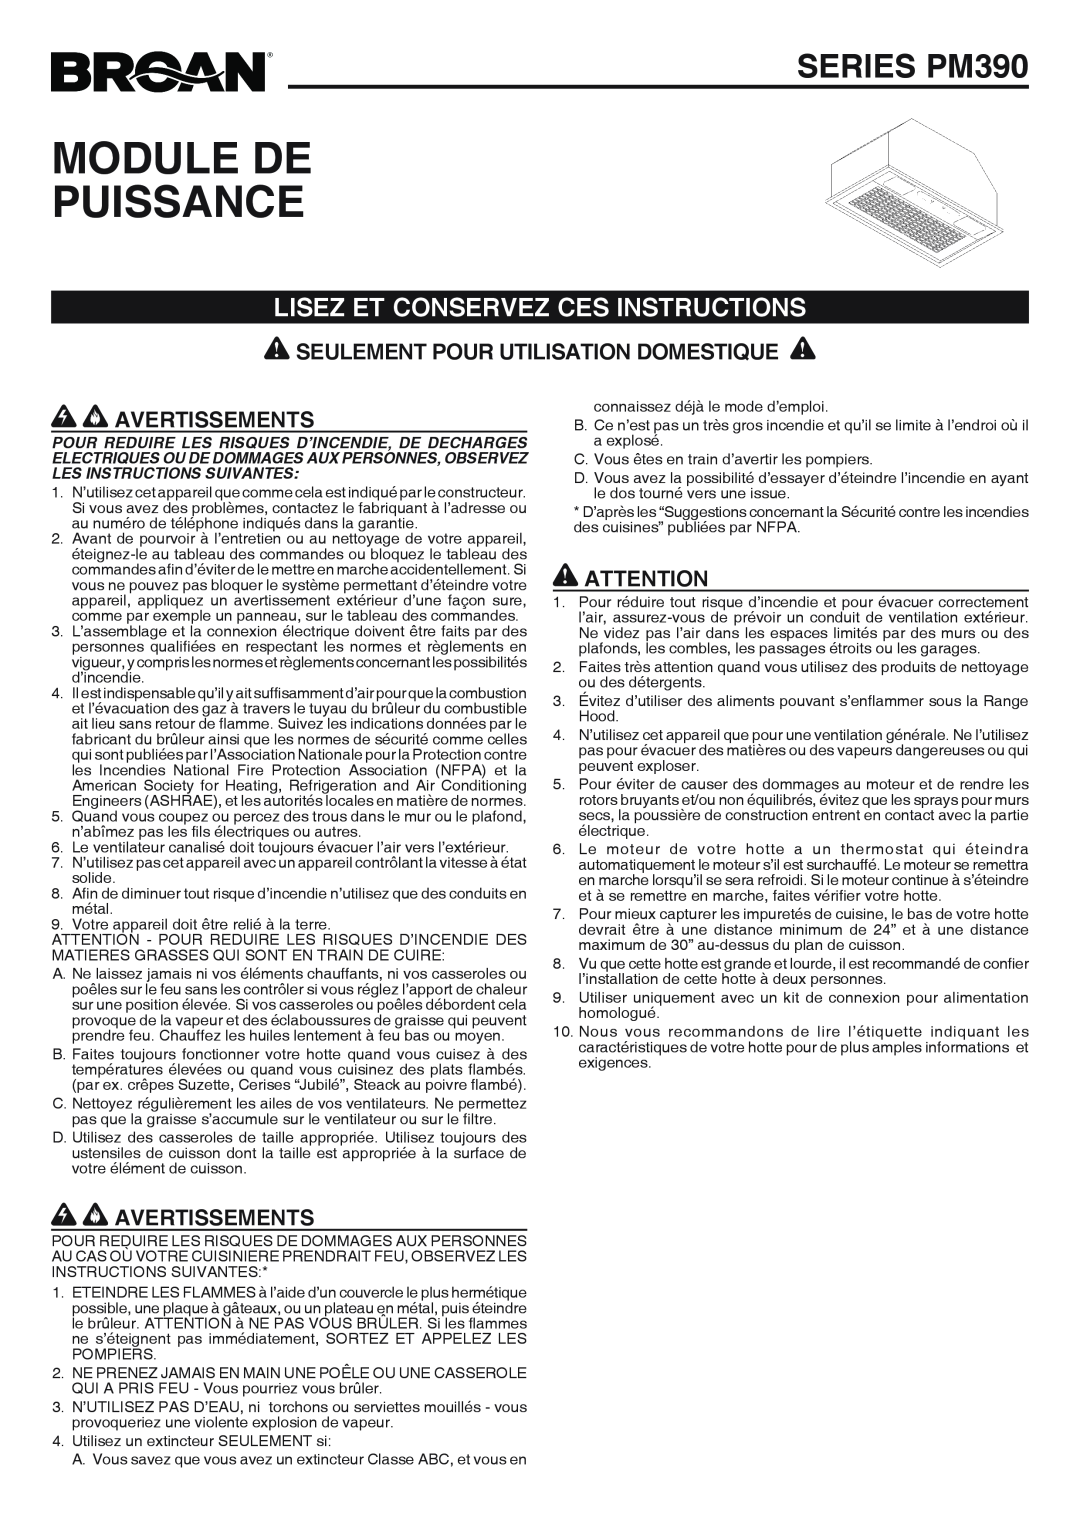 Broan RHVBB20SM manual Module De Puissance, SERIES PM390, Lisez Et Conservez Ces Instructions, Avertissements 